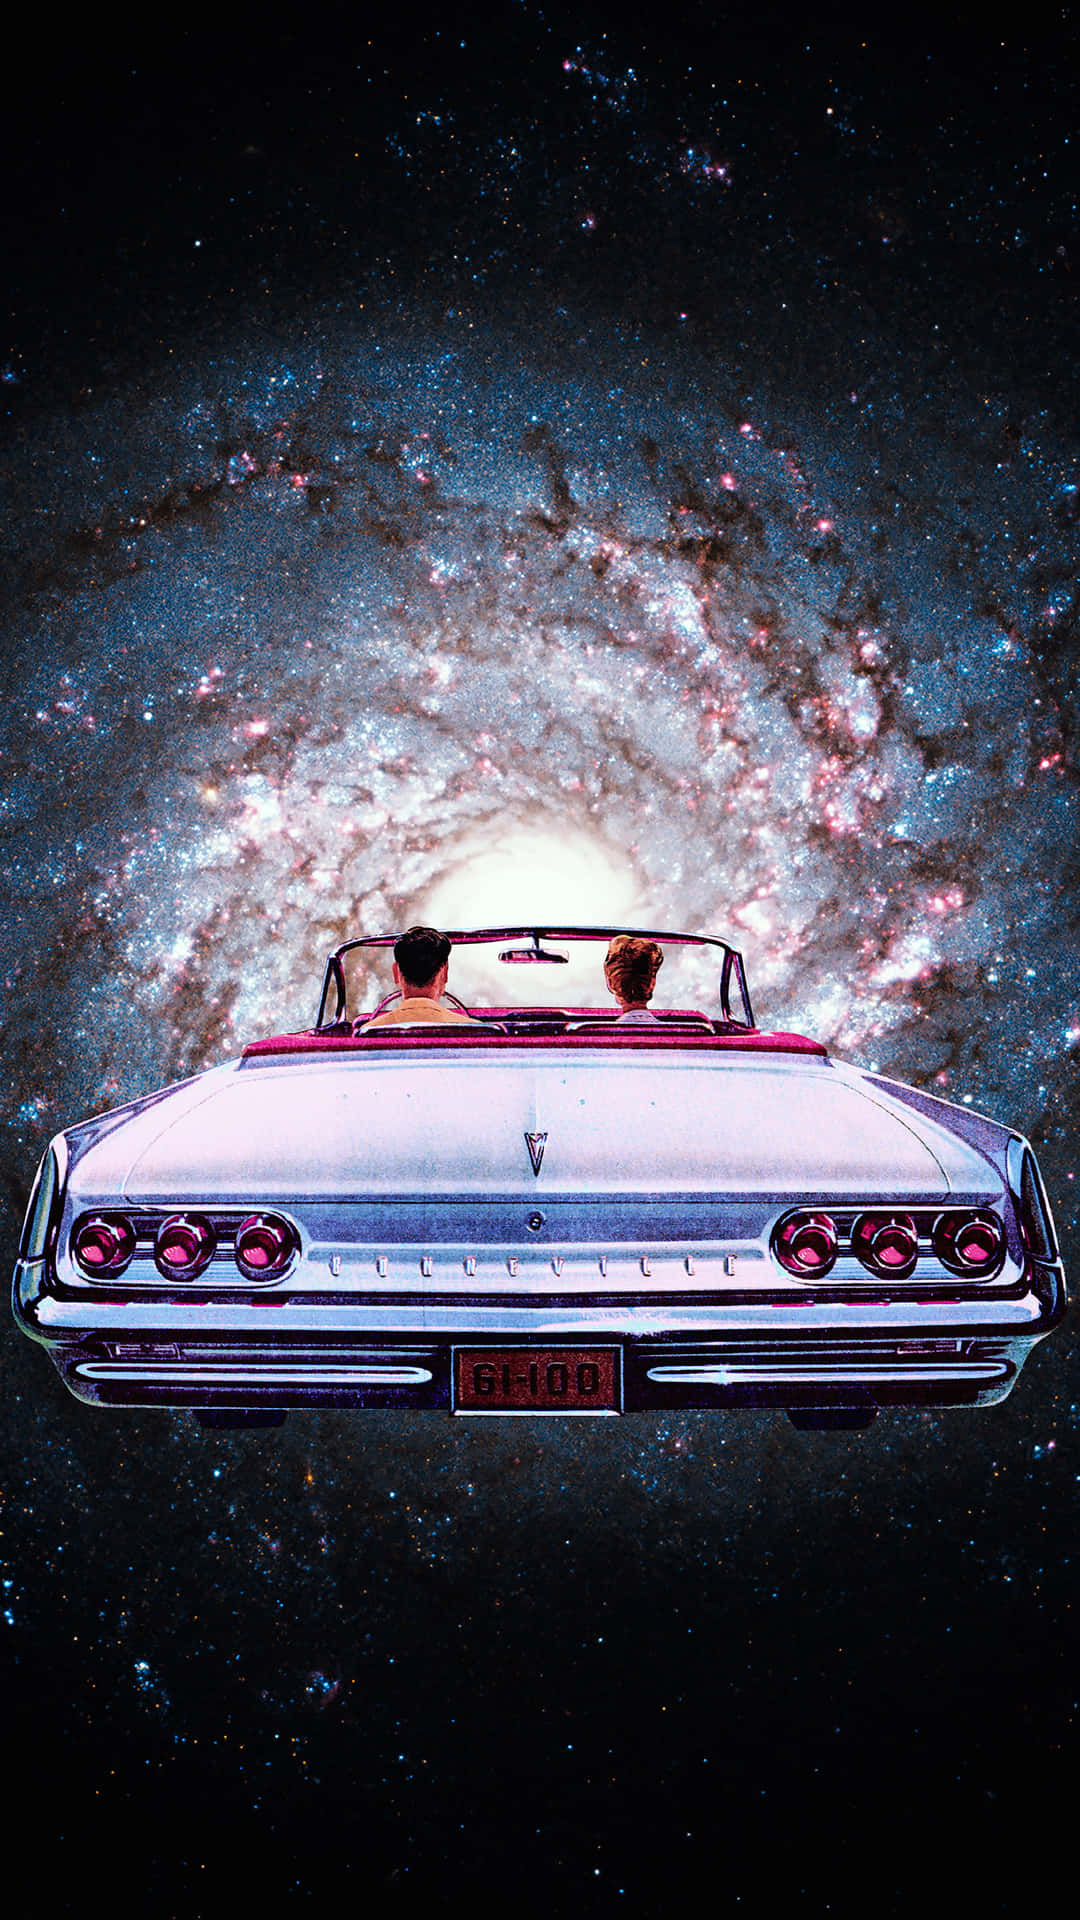 Galactic Road Trip_ Vintage Space Aesthetic.jpg Wallpaper